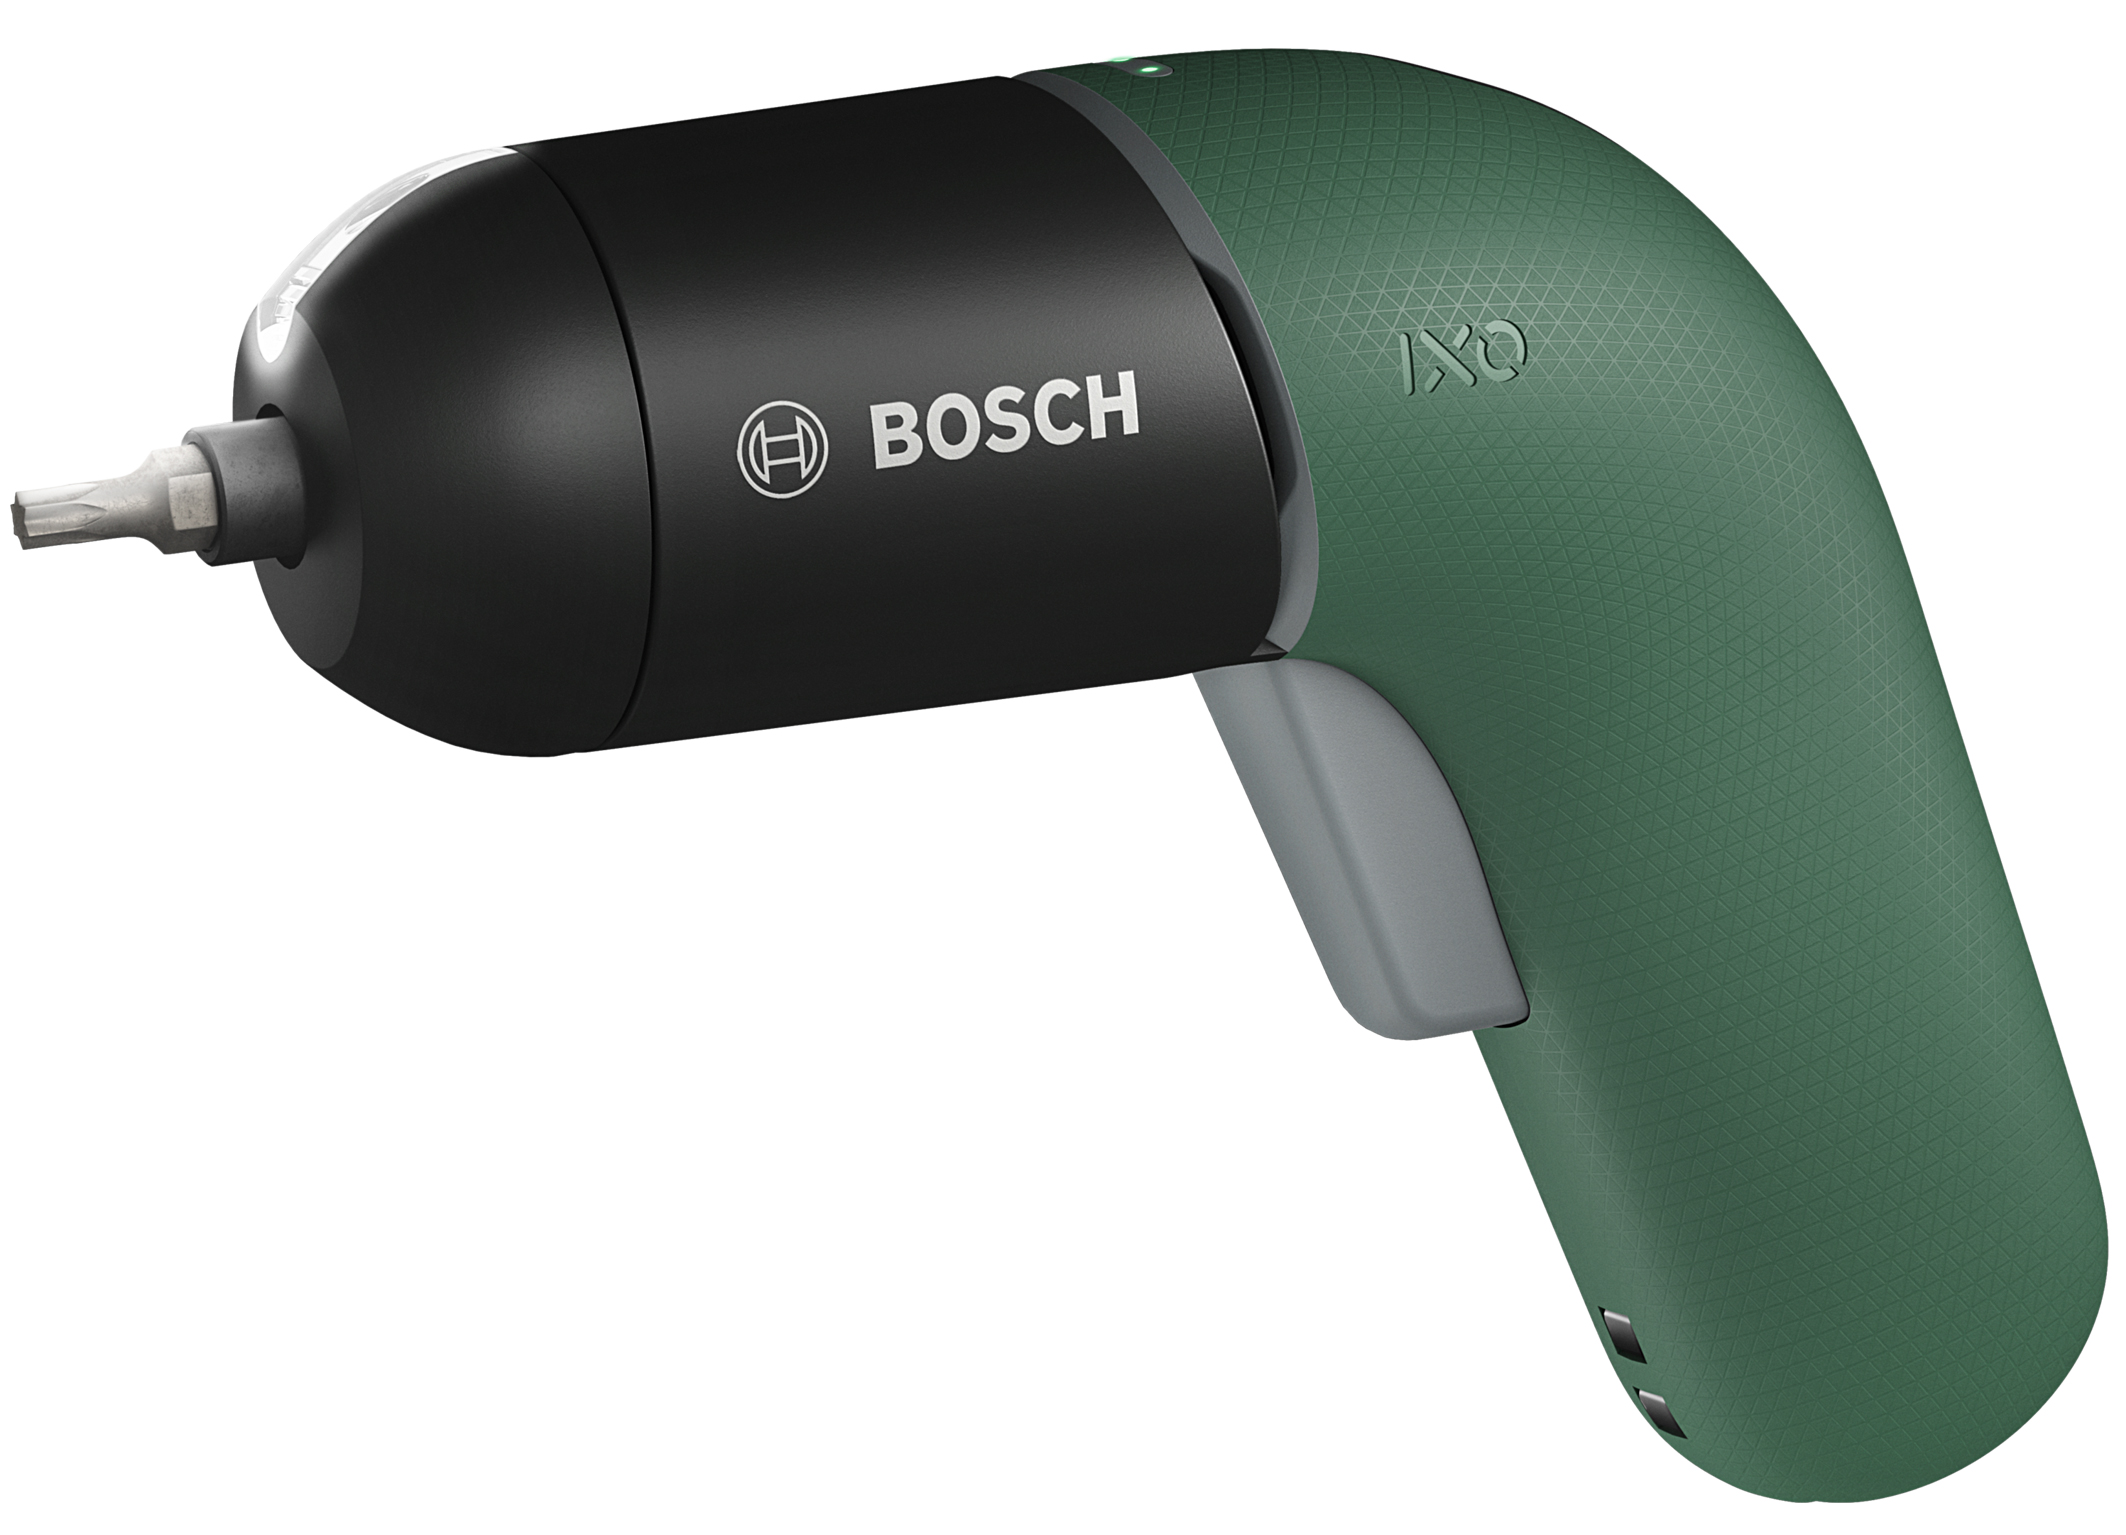 Kult-Schrauber in neuem Gewand: Bosch erfindet den Ixo neu